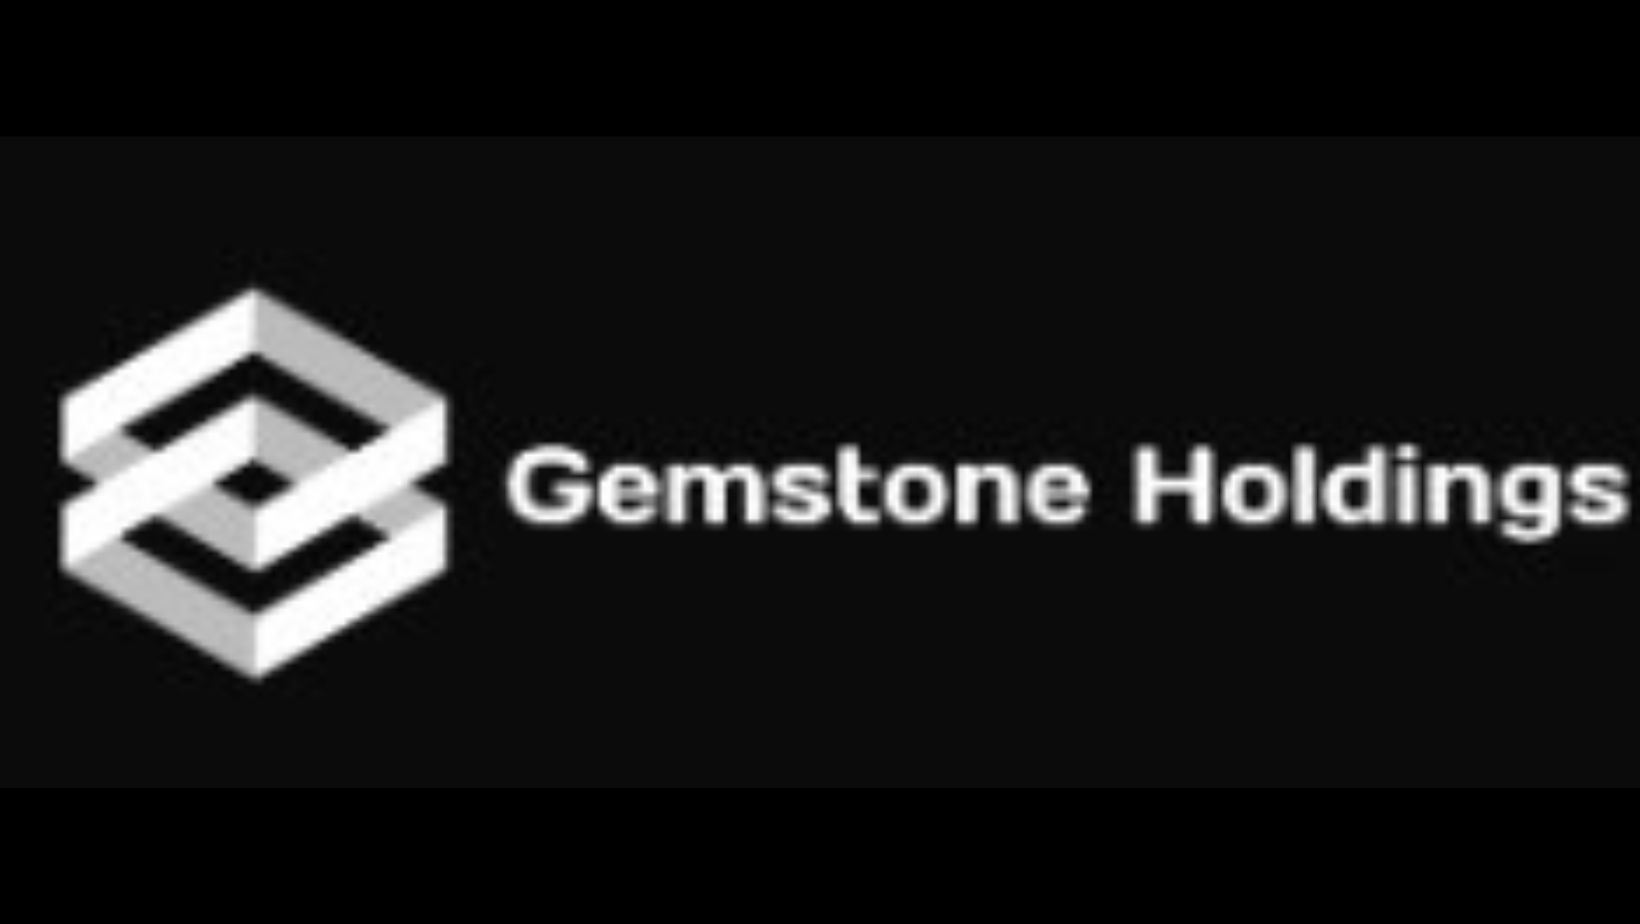 Gemstone Holdings logo